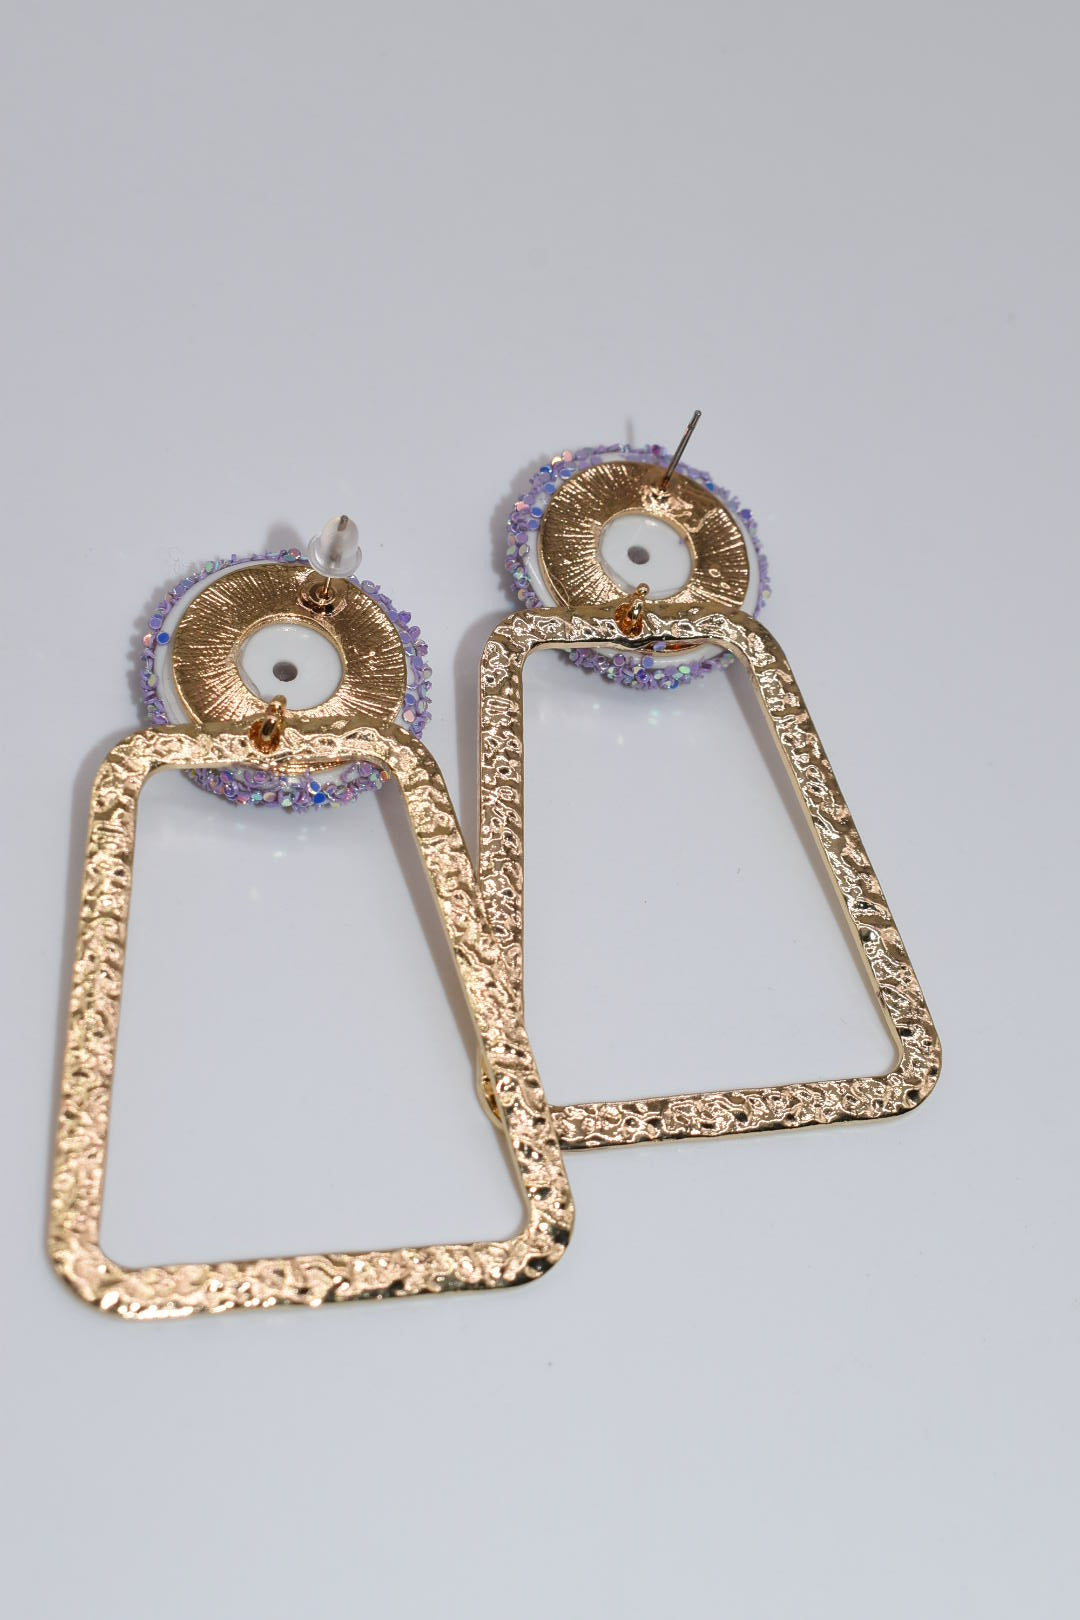 Statement Earrings: Lavender Glitter & Gold Trap-ezoid Earrings